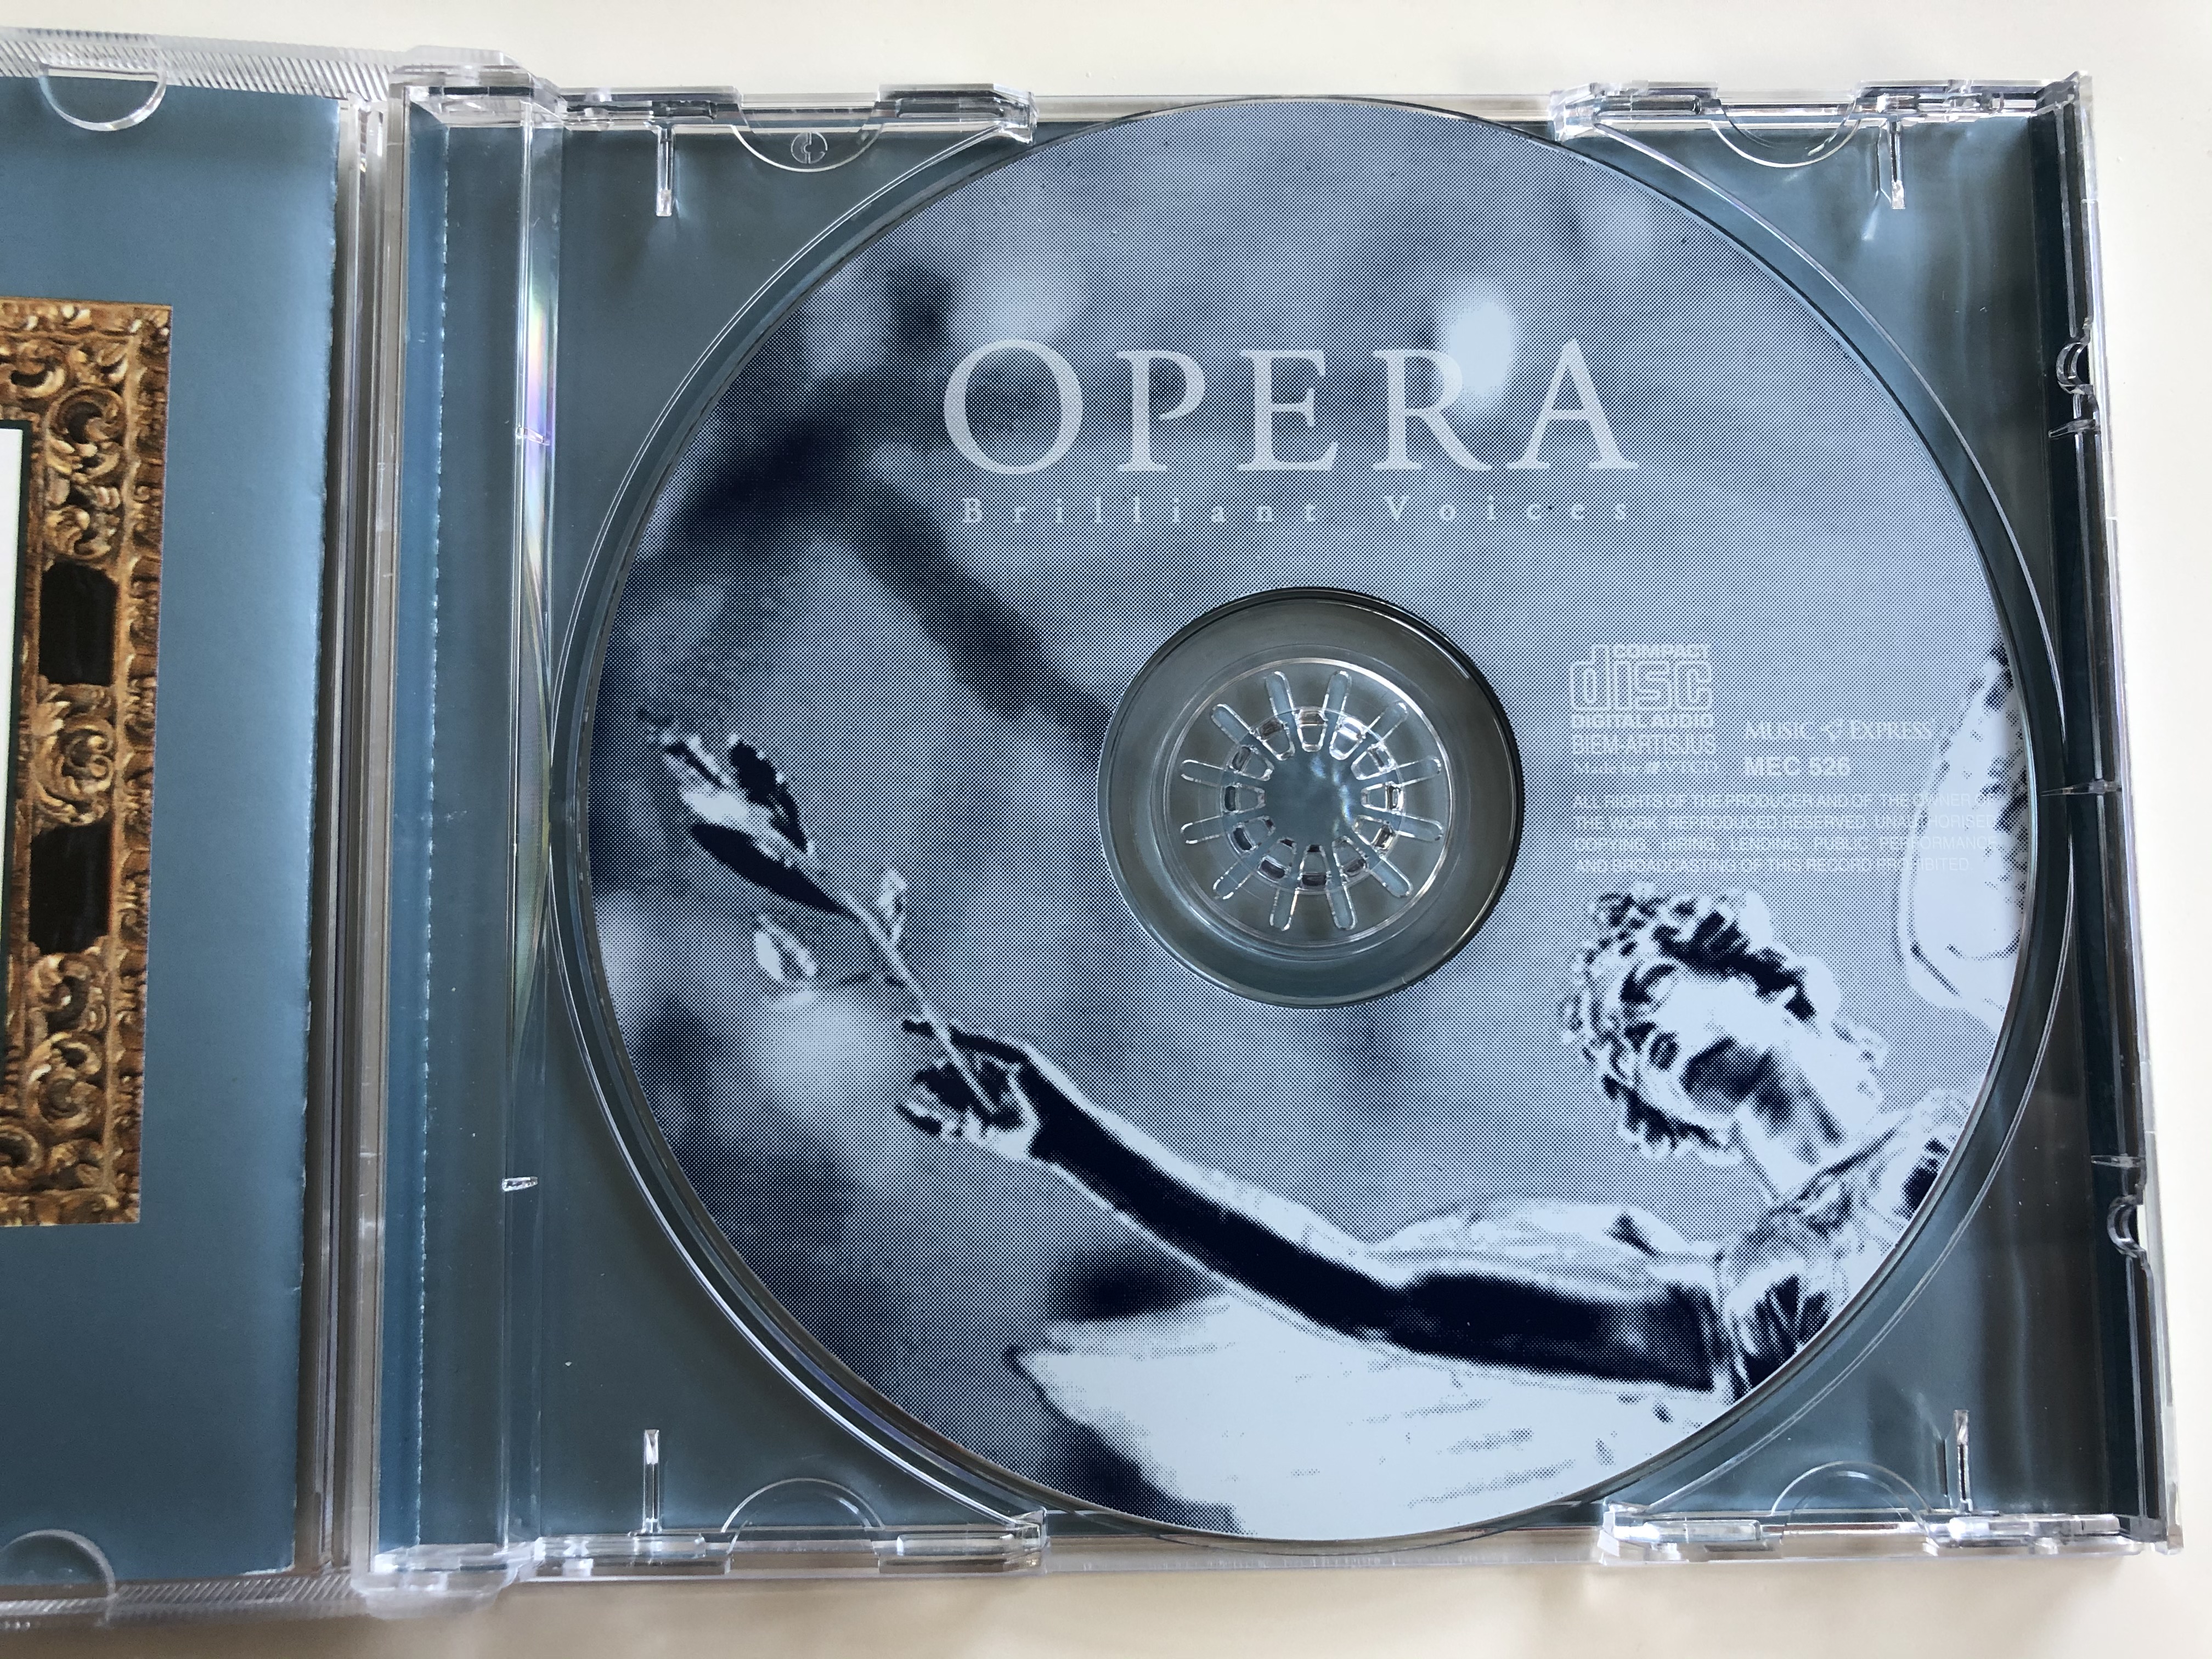 opera-brilliant-voices-music-express-audio-cd-mec-526-5-.jpg